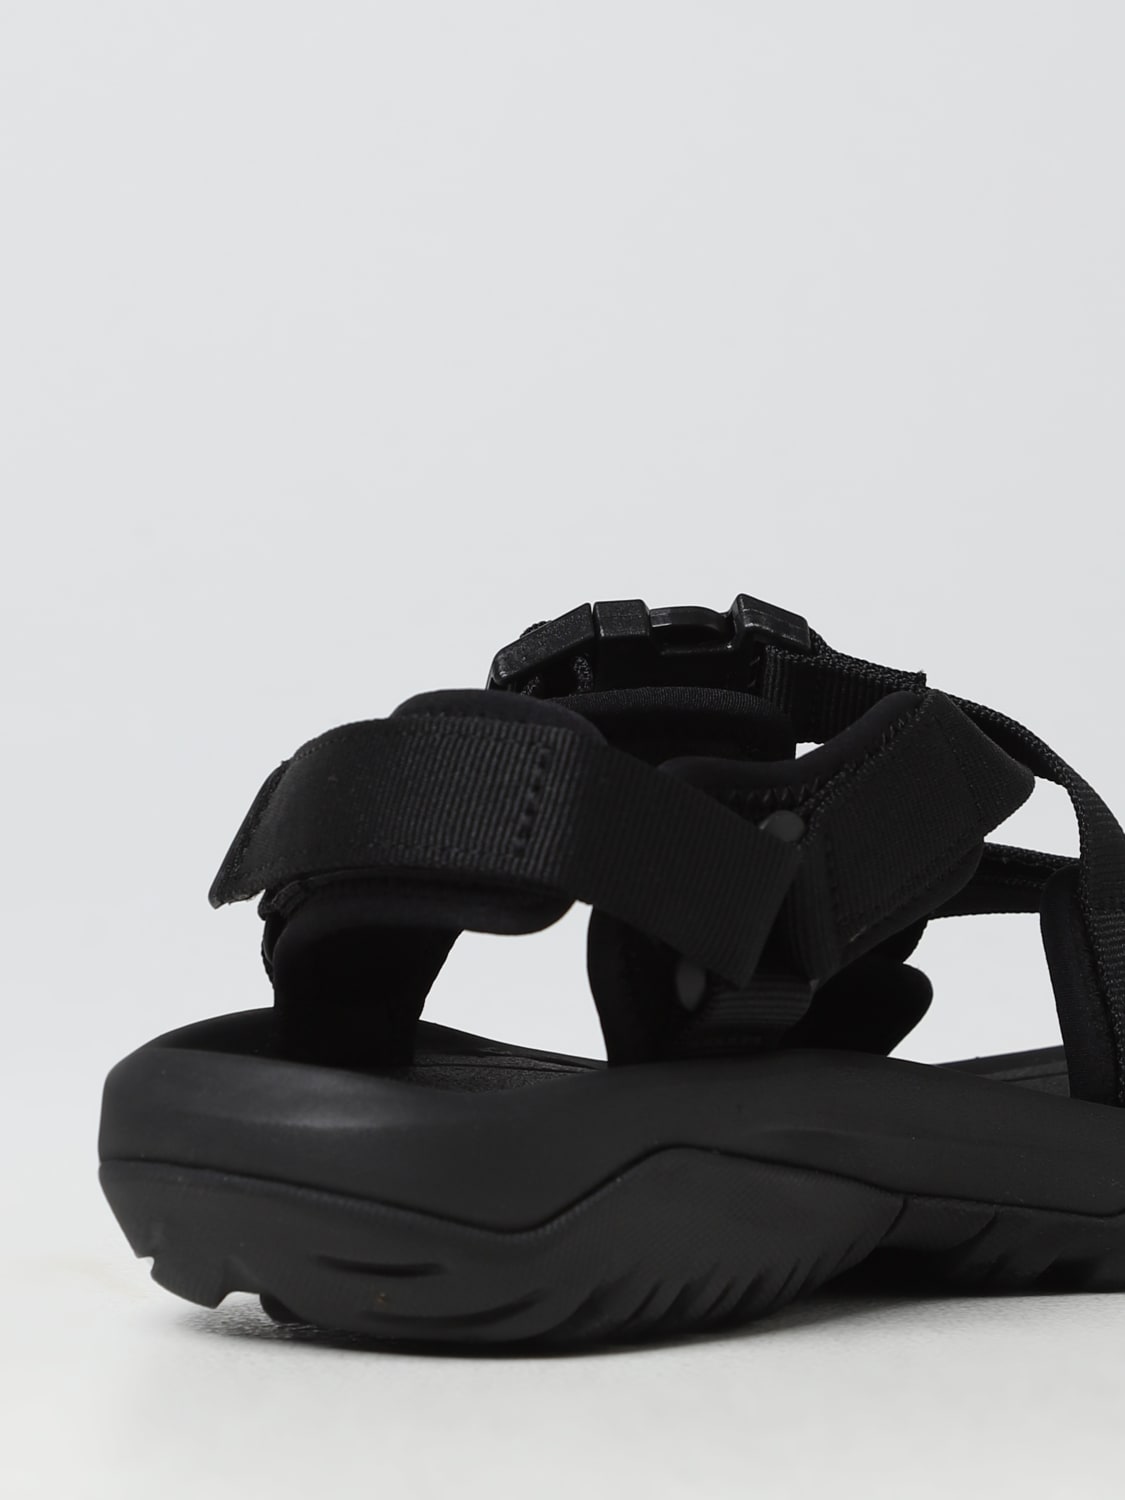 Teva Outlet: sandals for man - Black | Teva sandals 1121534 online at ...